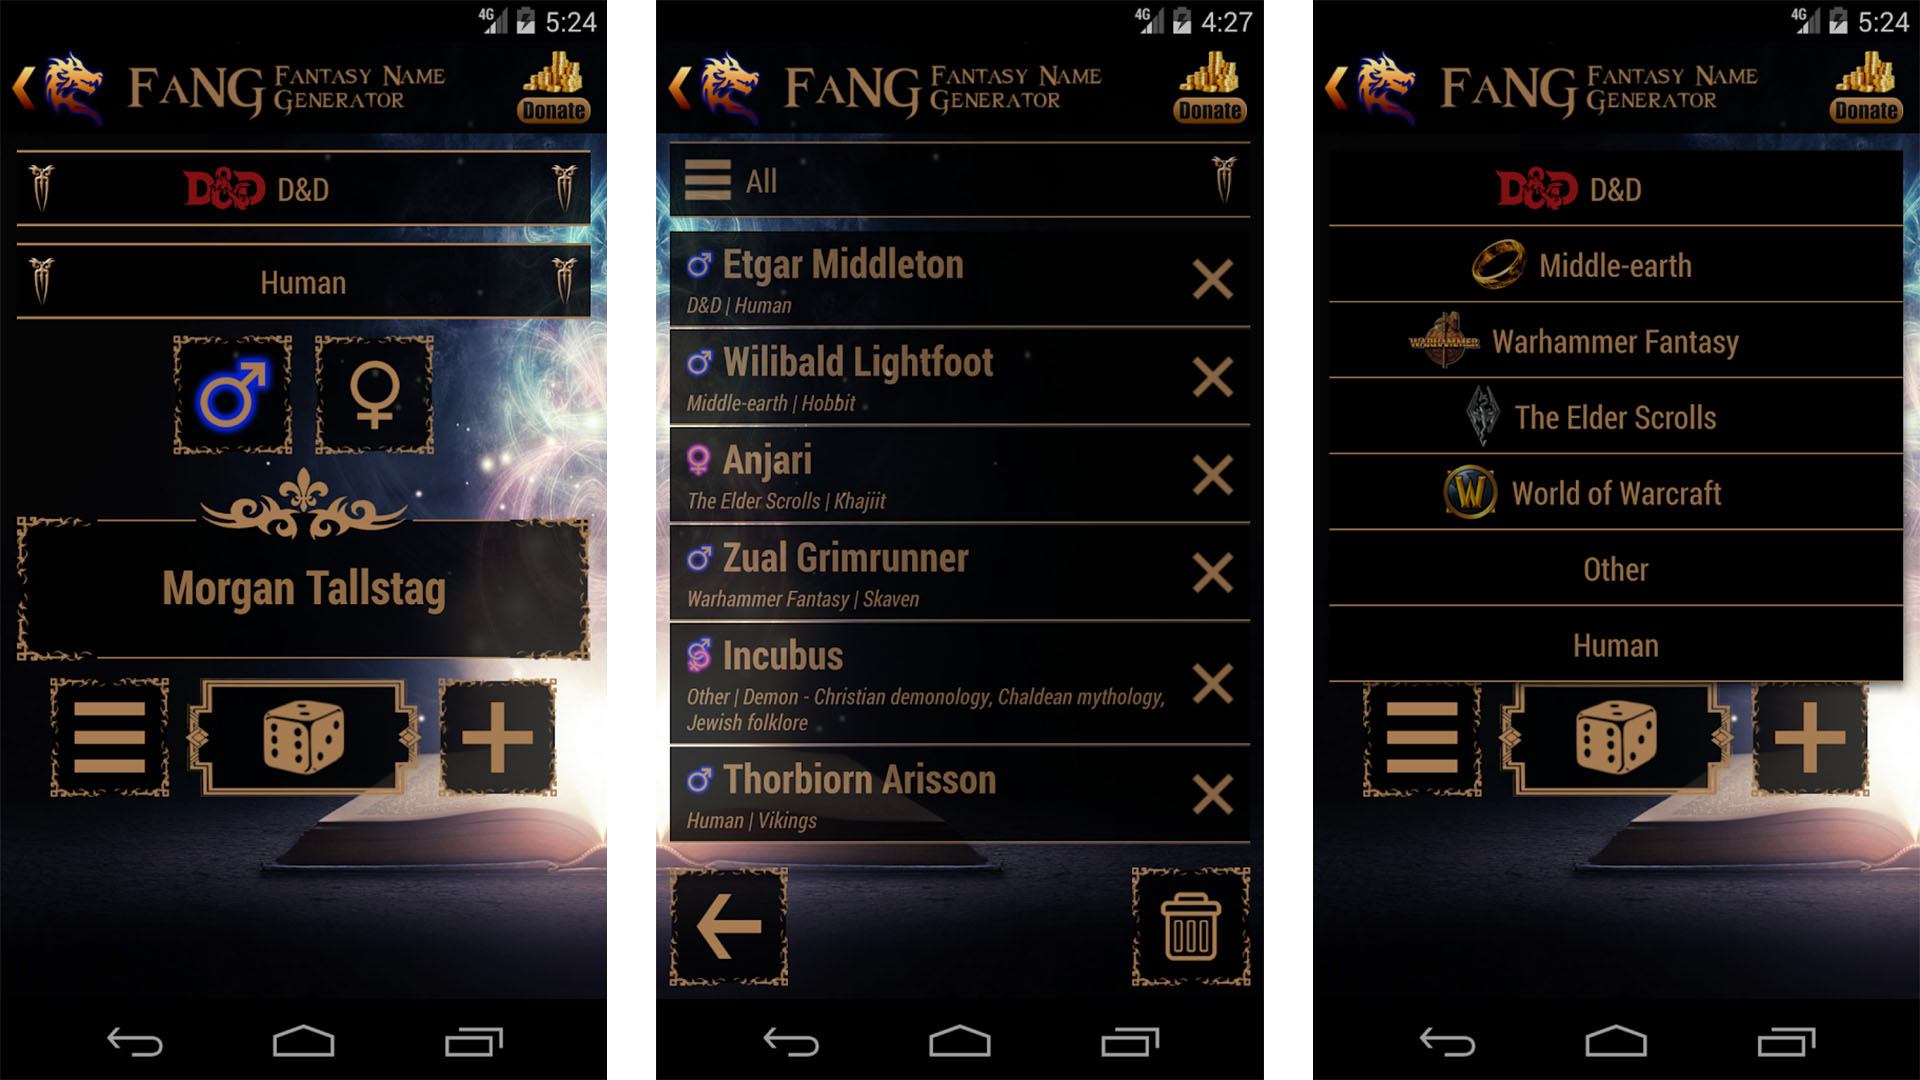 FaNG Fantasy Name Generator screenshot 2022